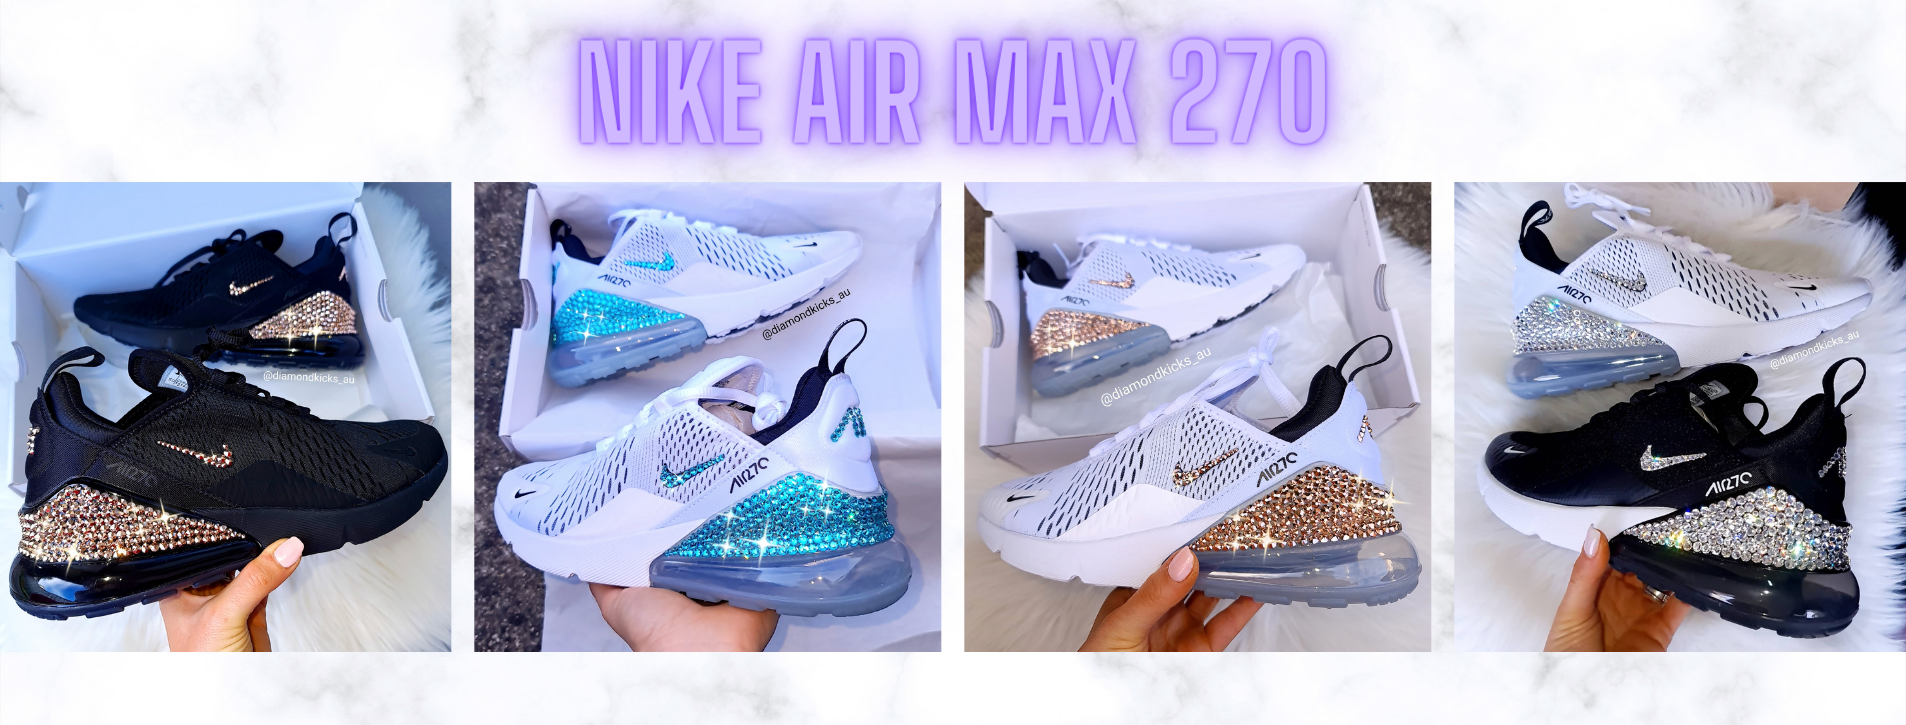 Custom Nike Air Max 270 Sneakers With Swarovski Crystal Gems -  UK